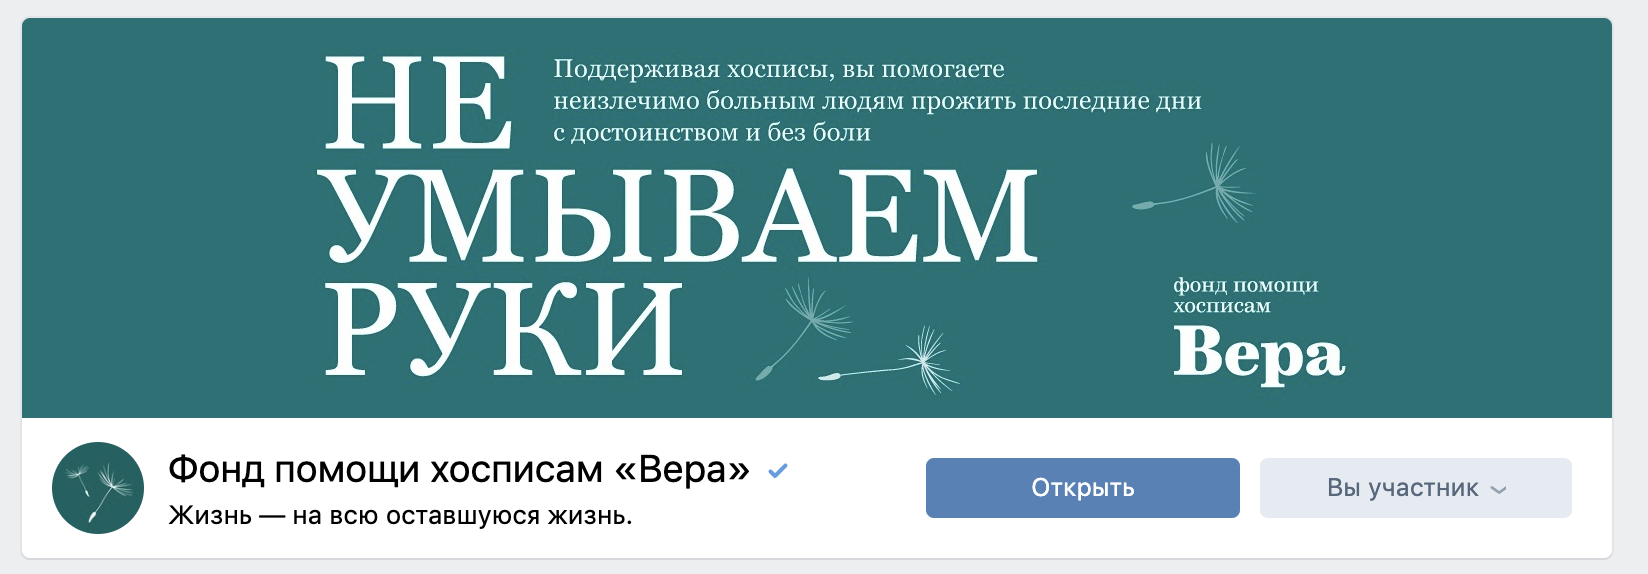 Пример ситуативной обложки в группе ВКонтакте фонда помощи хосписам "Вера". Изображение: скриншот из группы vk.com/hospicefund